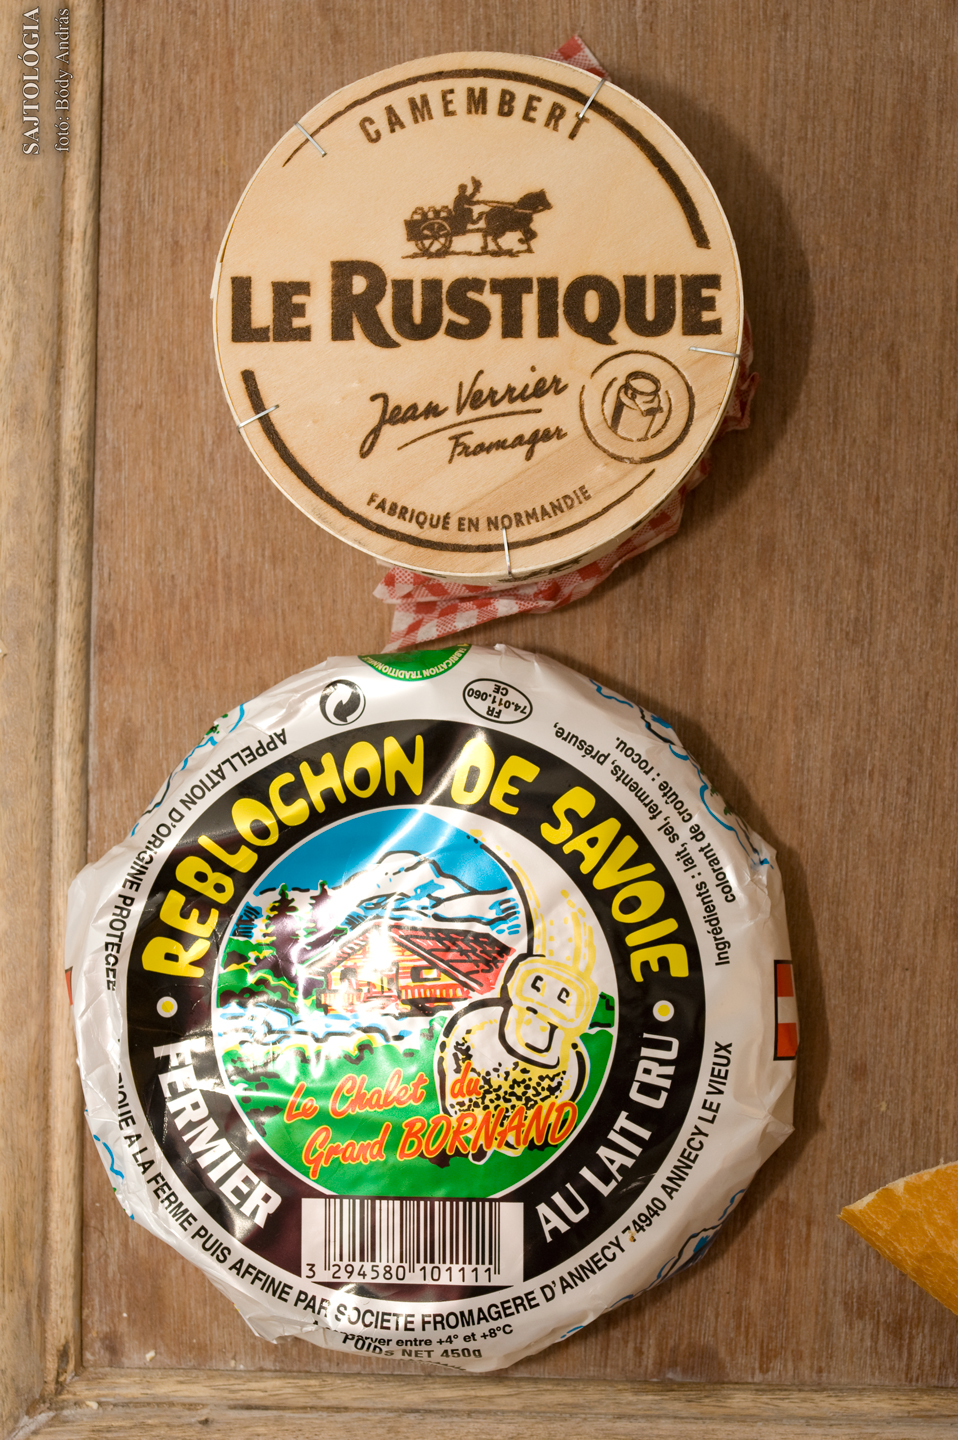 Le Rustique Camembert és Reblochon de Savoie - csomagolva